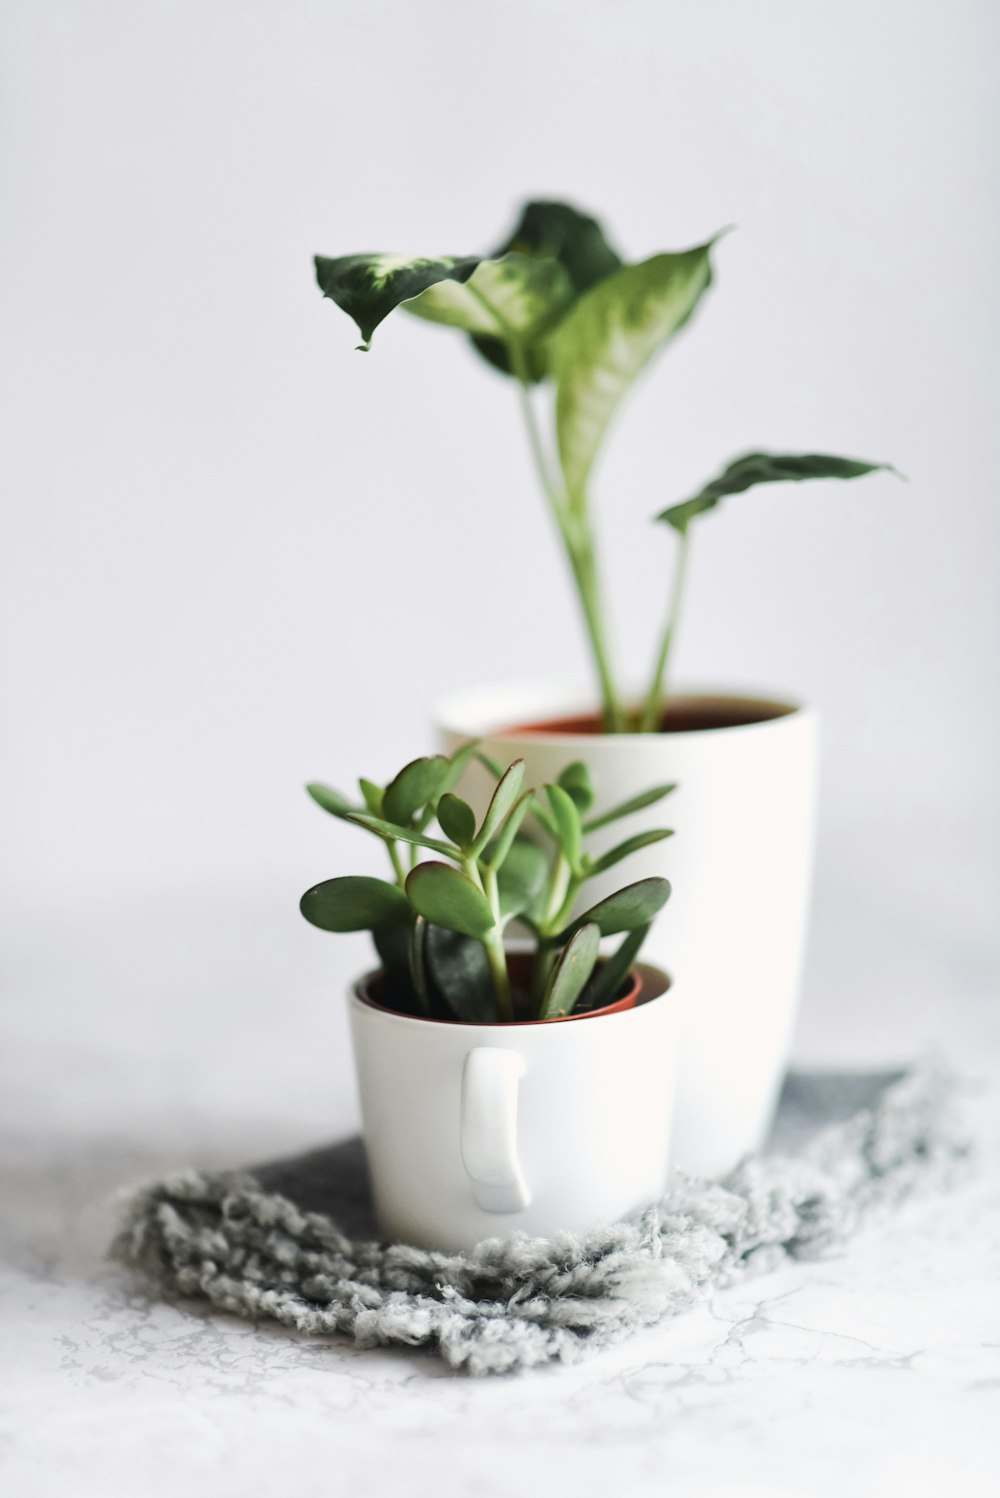 planta suculenta verde no vaso marrom perto da planta de cana verde no vaso branco